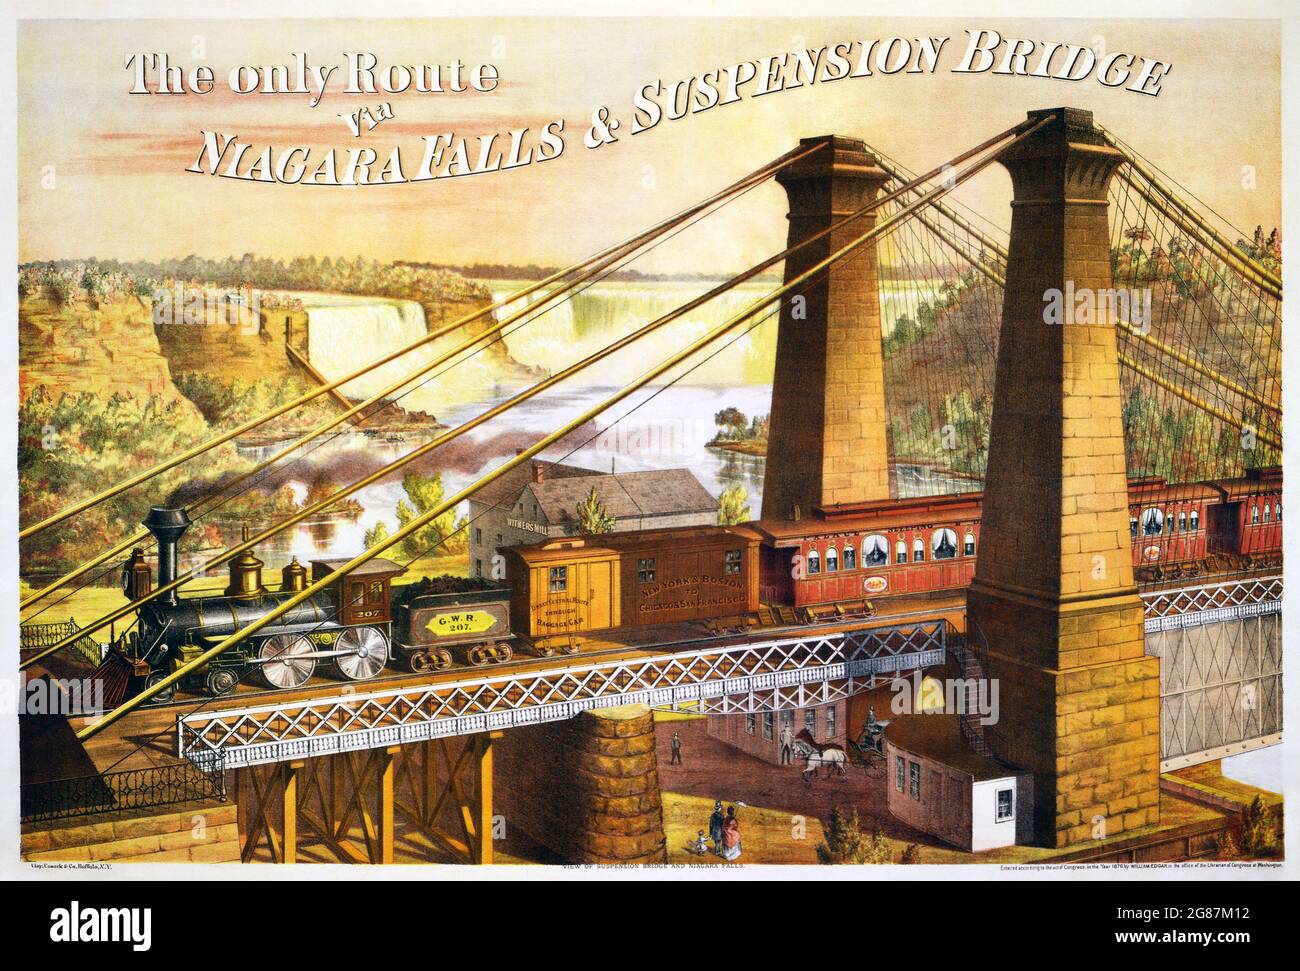 Werbung für die Niagara Falls Suspension Bridge der Great Western Railway – „die einzige Route über die Niagara Falls & Suspension Bridge“ c 1876 Stockfoto